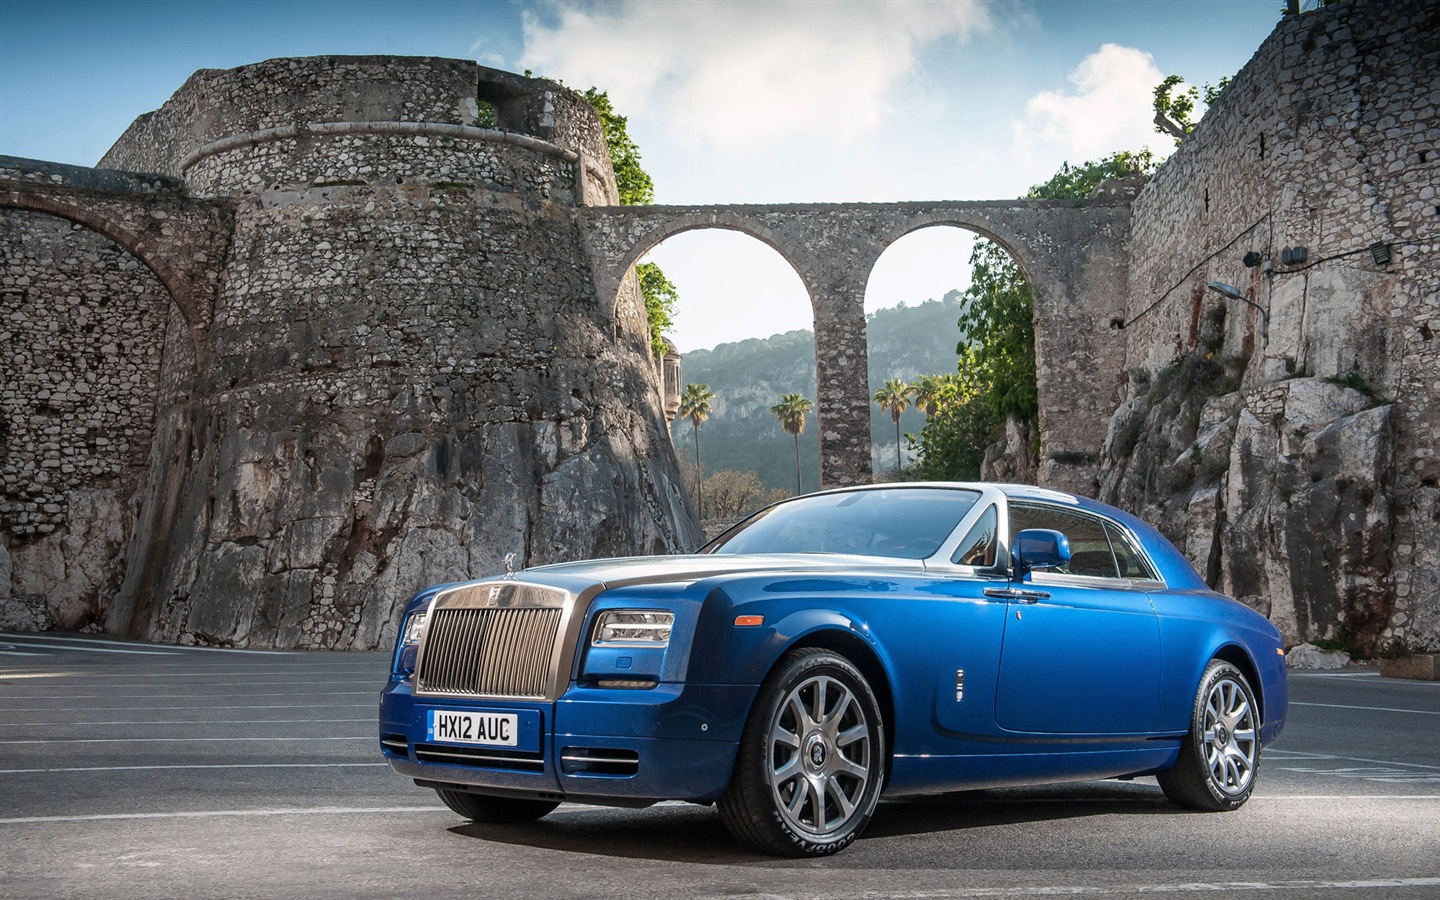 2013 Rolls-Royce Motor Cars HD Wallpapers #1 - 1440x900